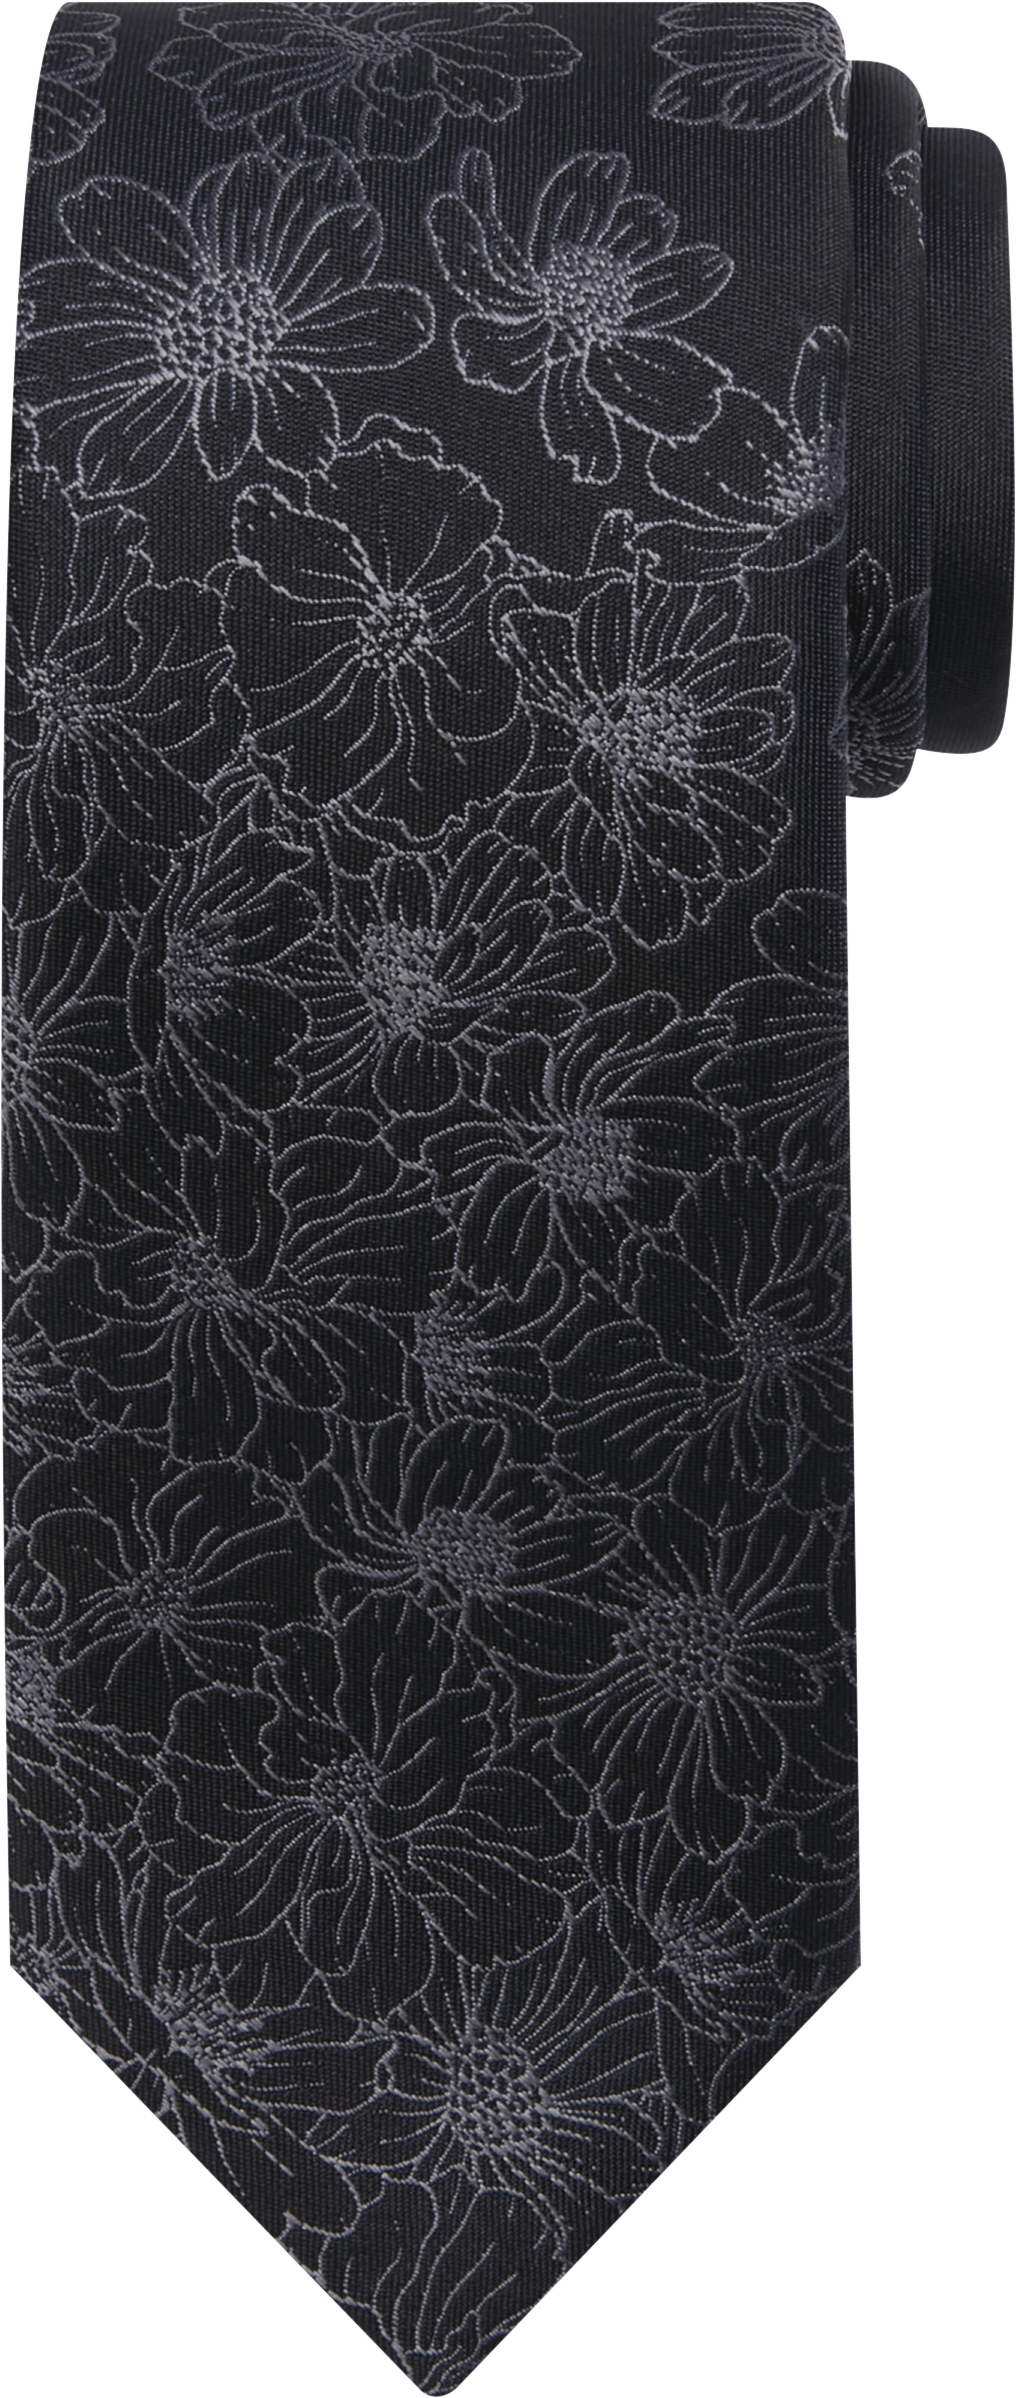 Narrow Floral Panel Tie